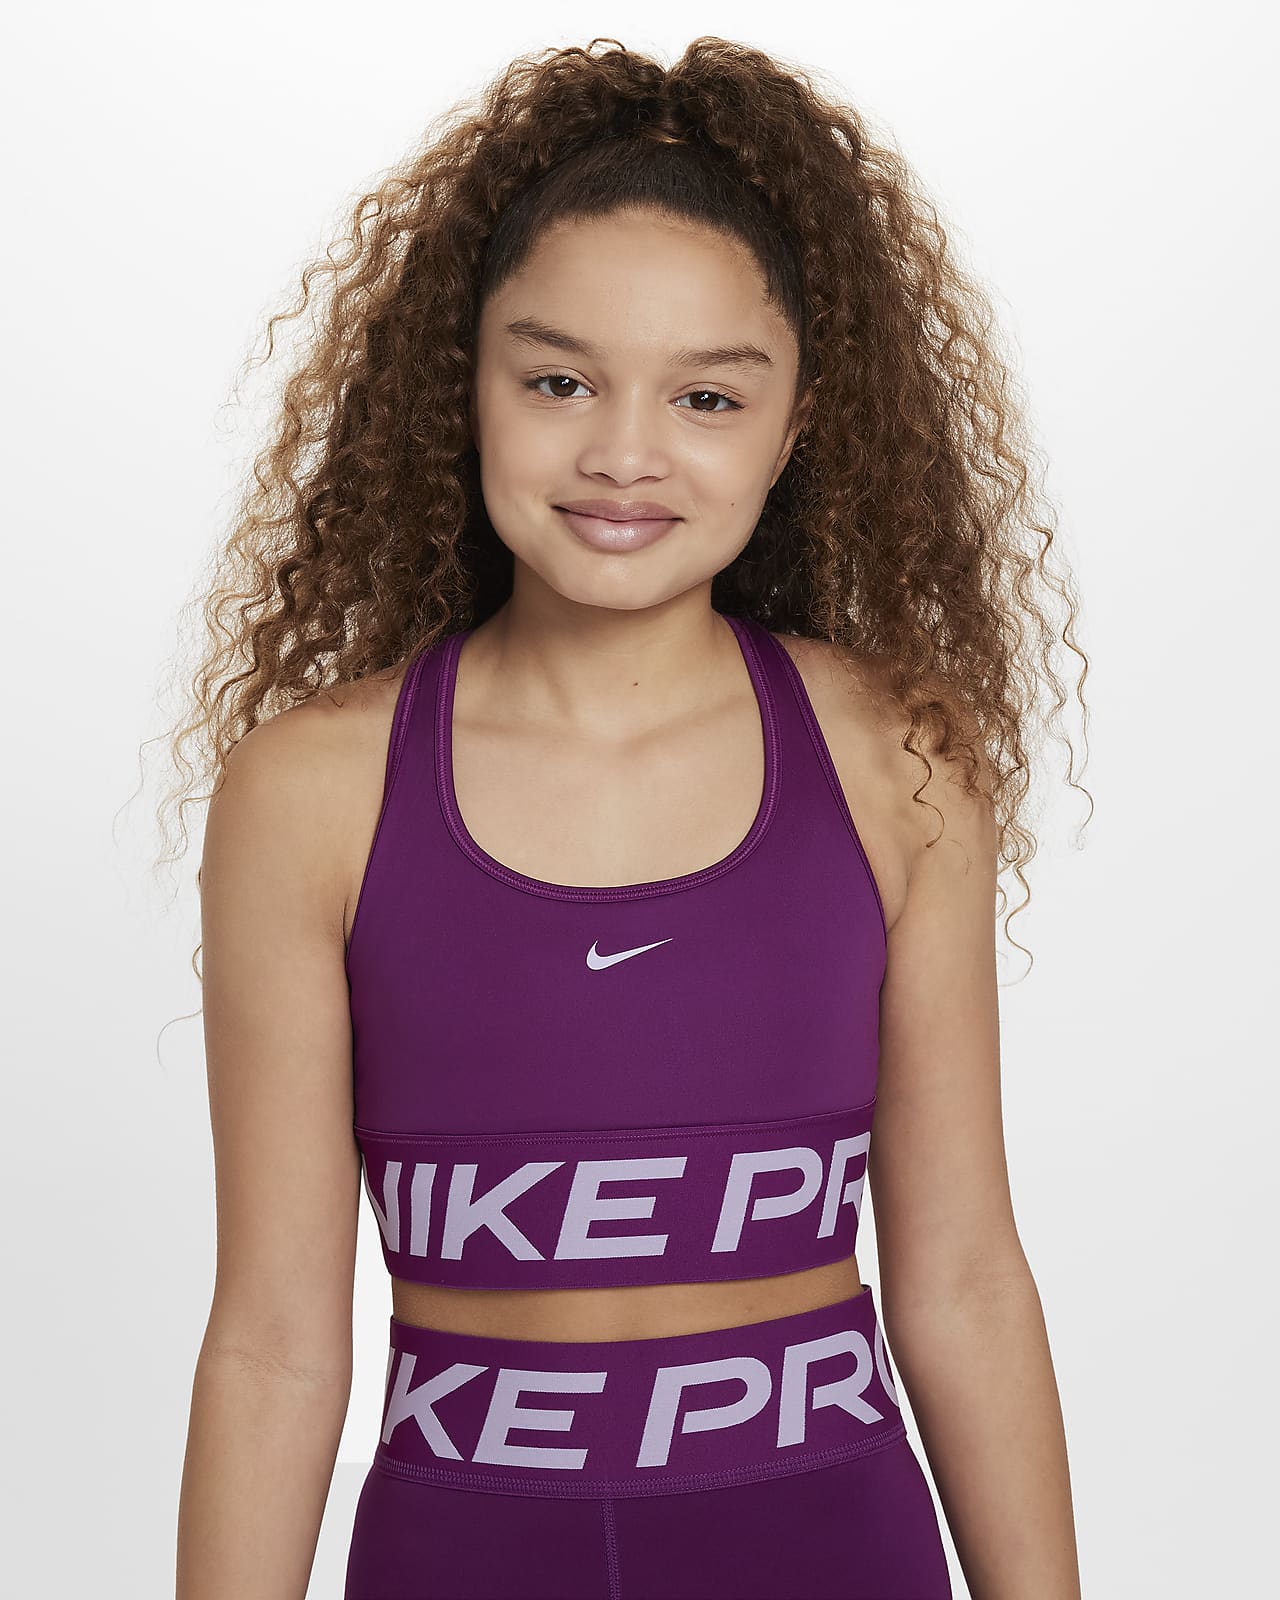 Under $70 Purple Running Sports Bras.